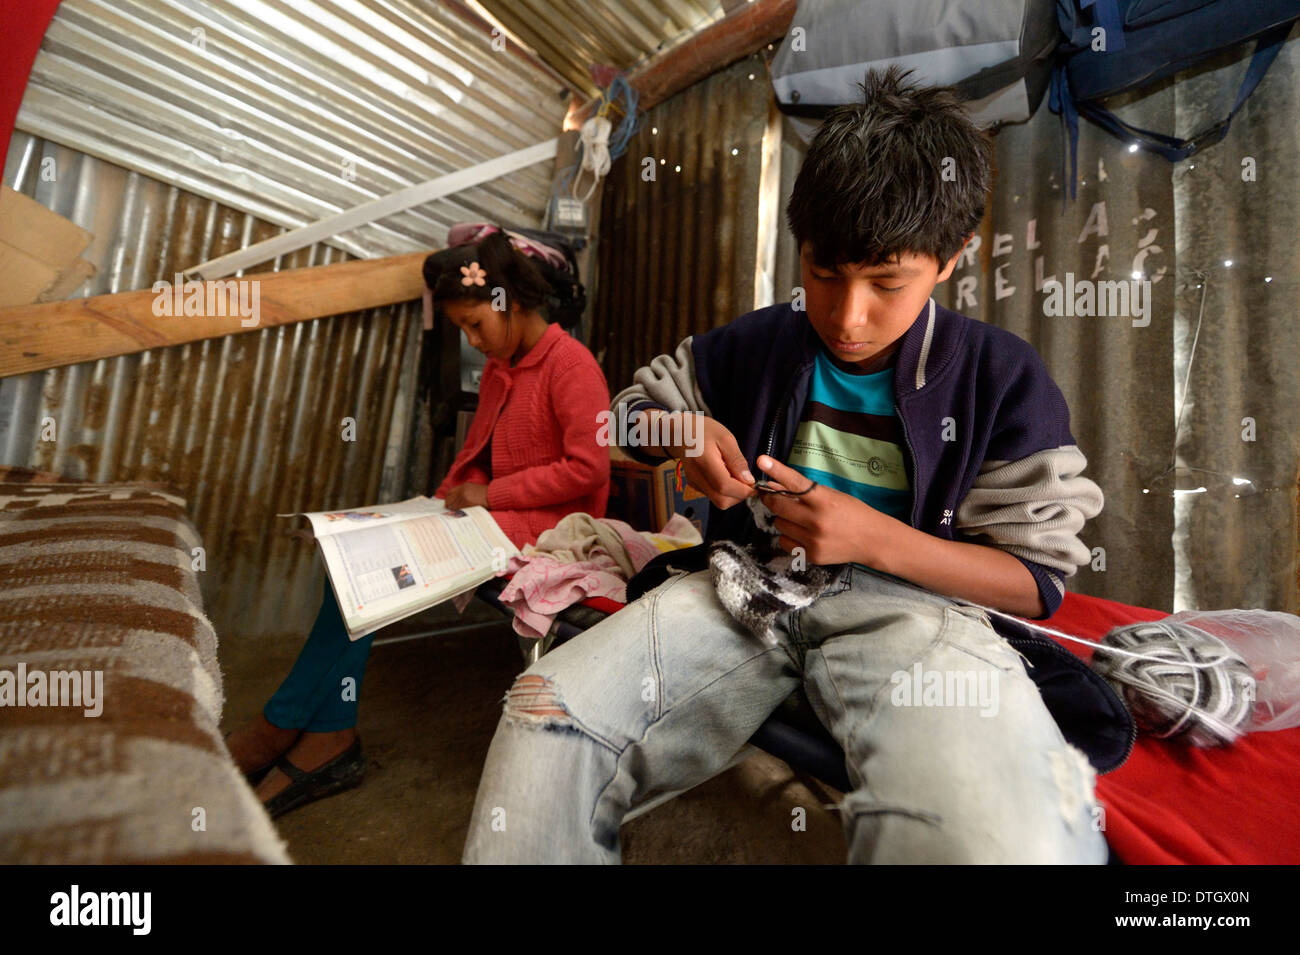 Adolescente, de 14 años, tejer una bufanda, su hermana, de 12 años, haciendo sus deberes, en una simple choza hecha de hierro corrugado Foto de stock